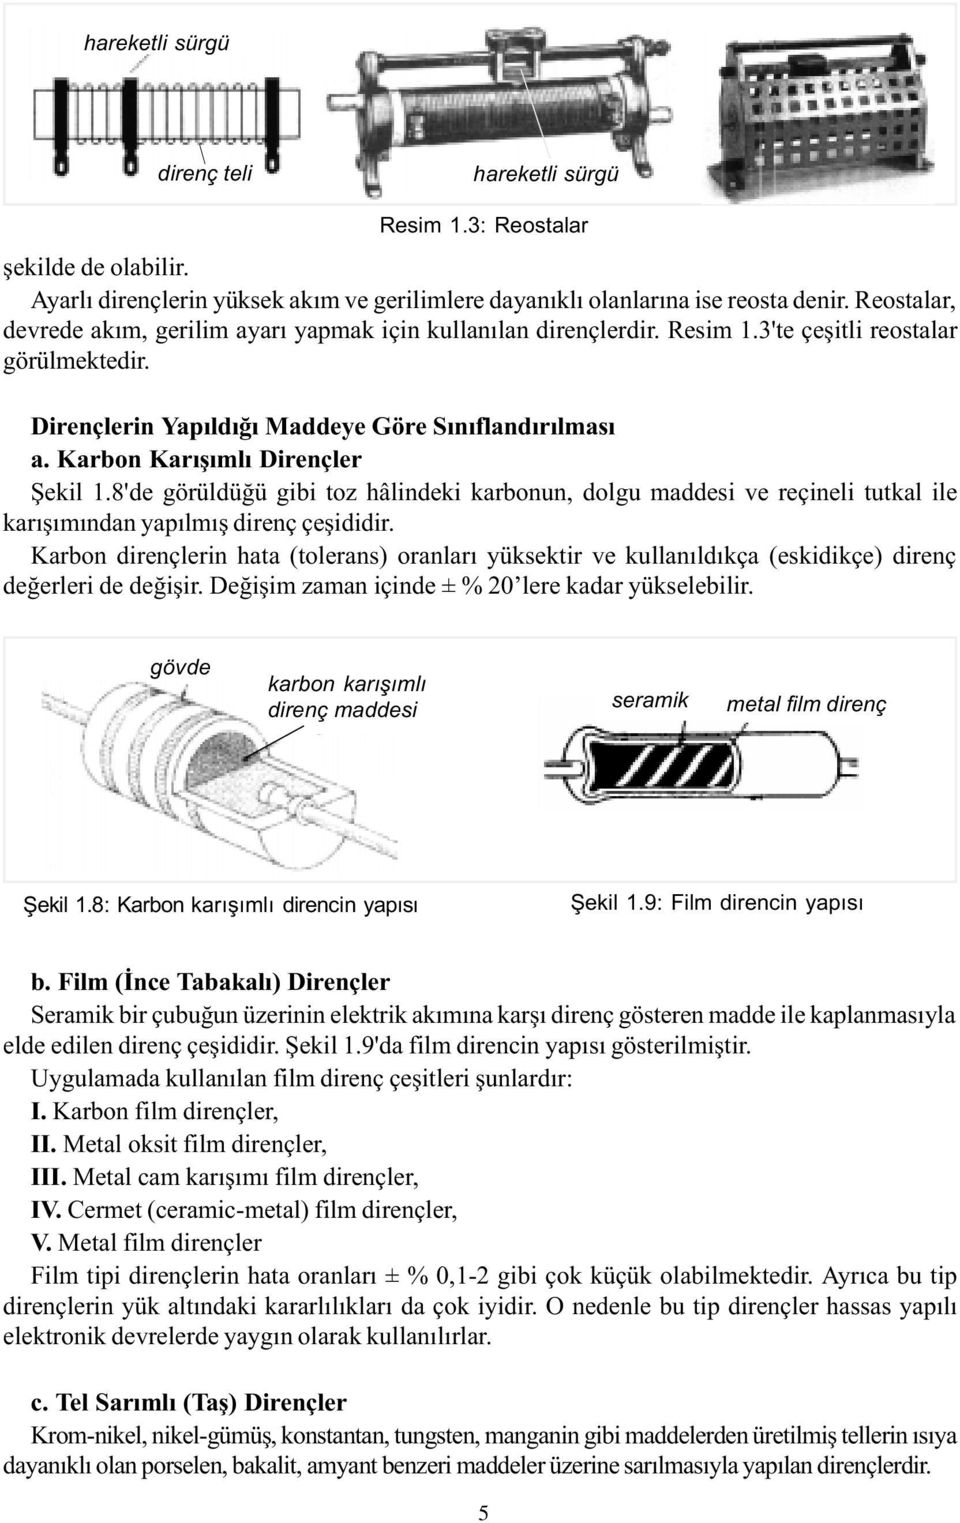 Karbon Karýþýmlý Dirençler Þekil 1.8'de görüldüðü gibi toz hâlindeki karbonun, dolgu maddesi ve reçineli tutkal ile karýþýmýndan yapýlmýþ direnç çeþididir.